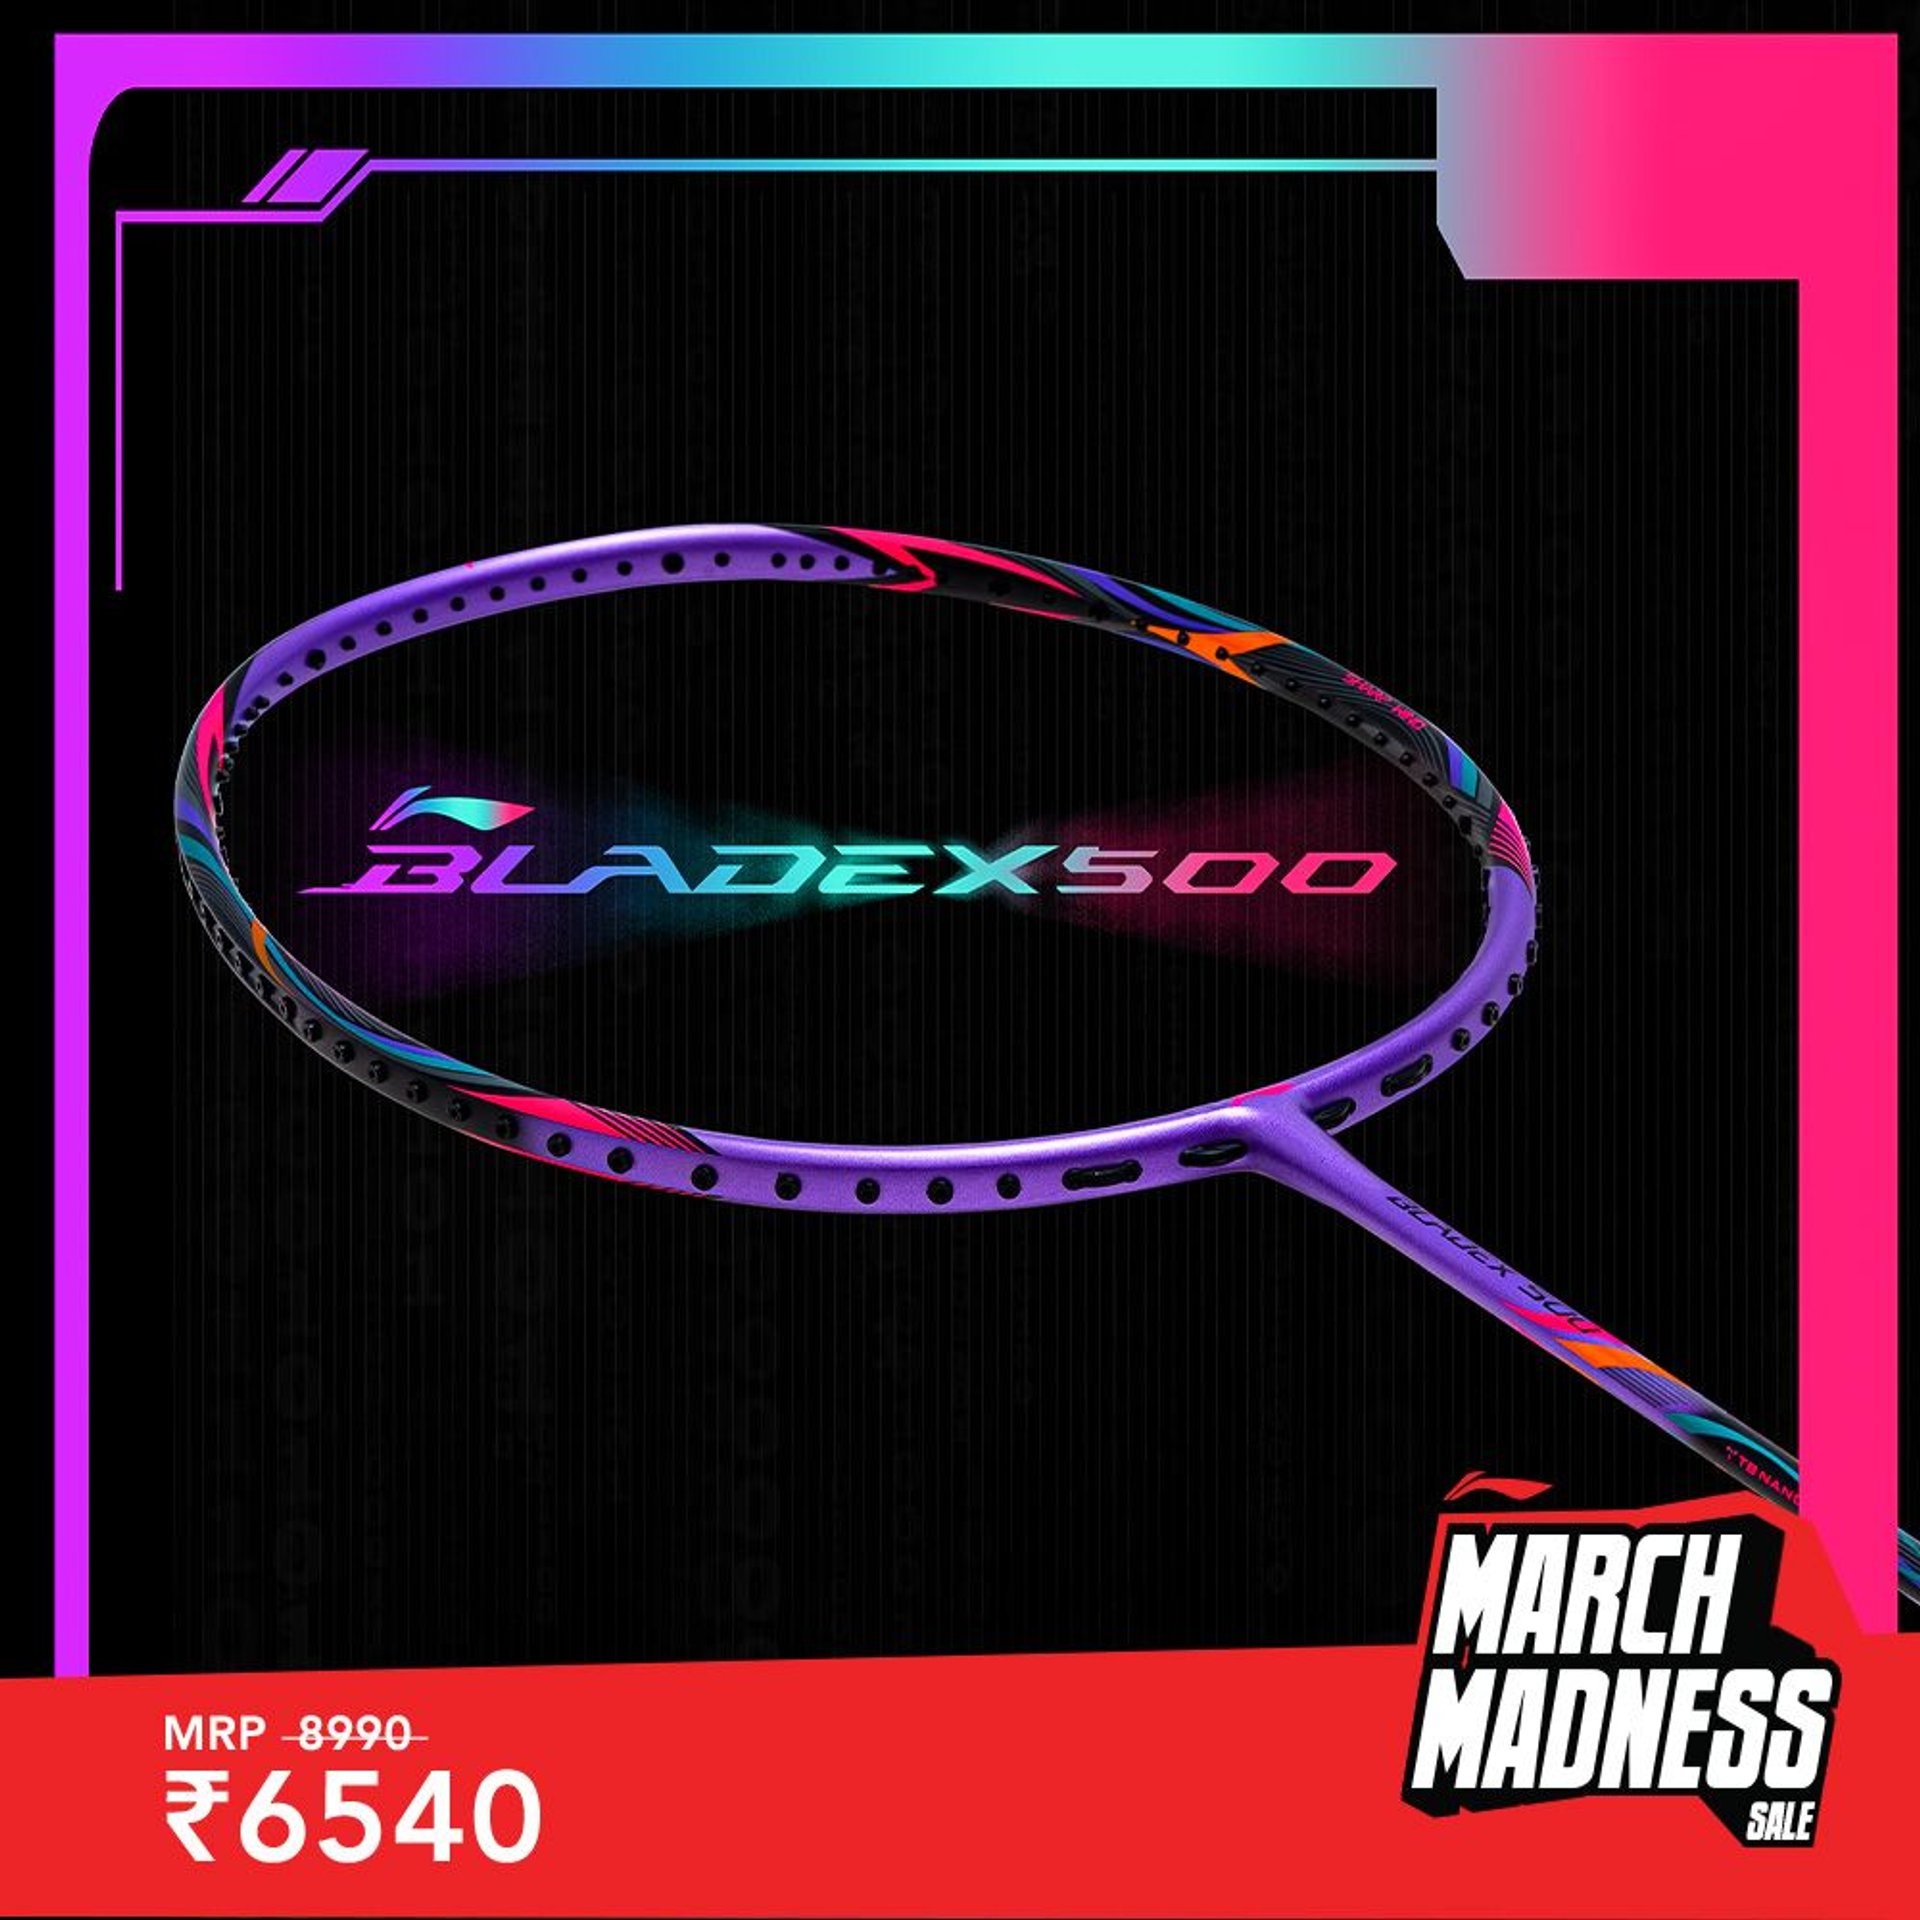 BladeX 500 - FlashSale